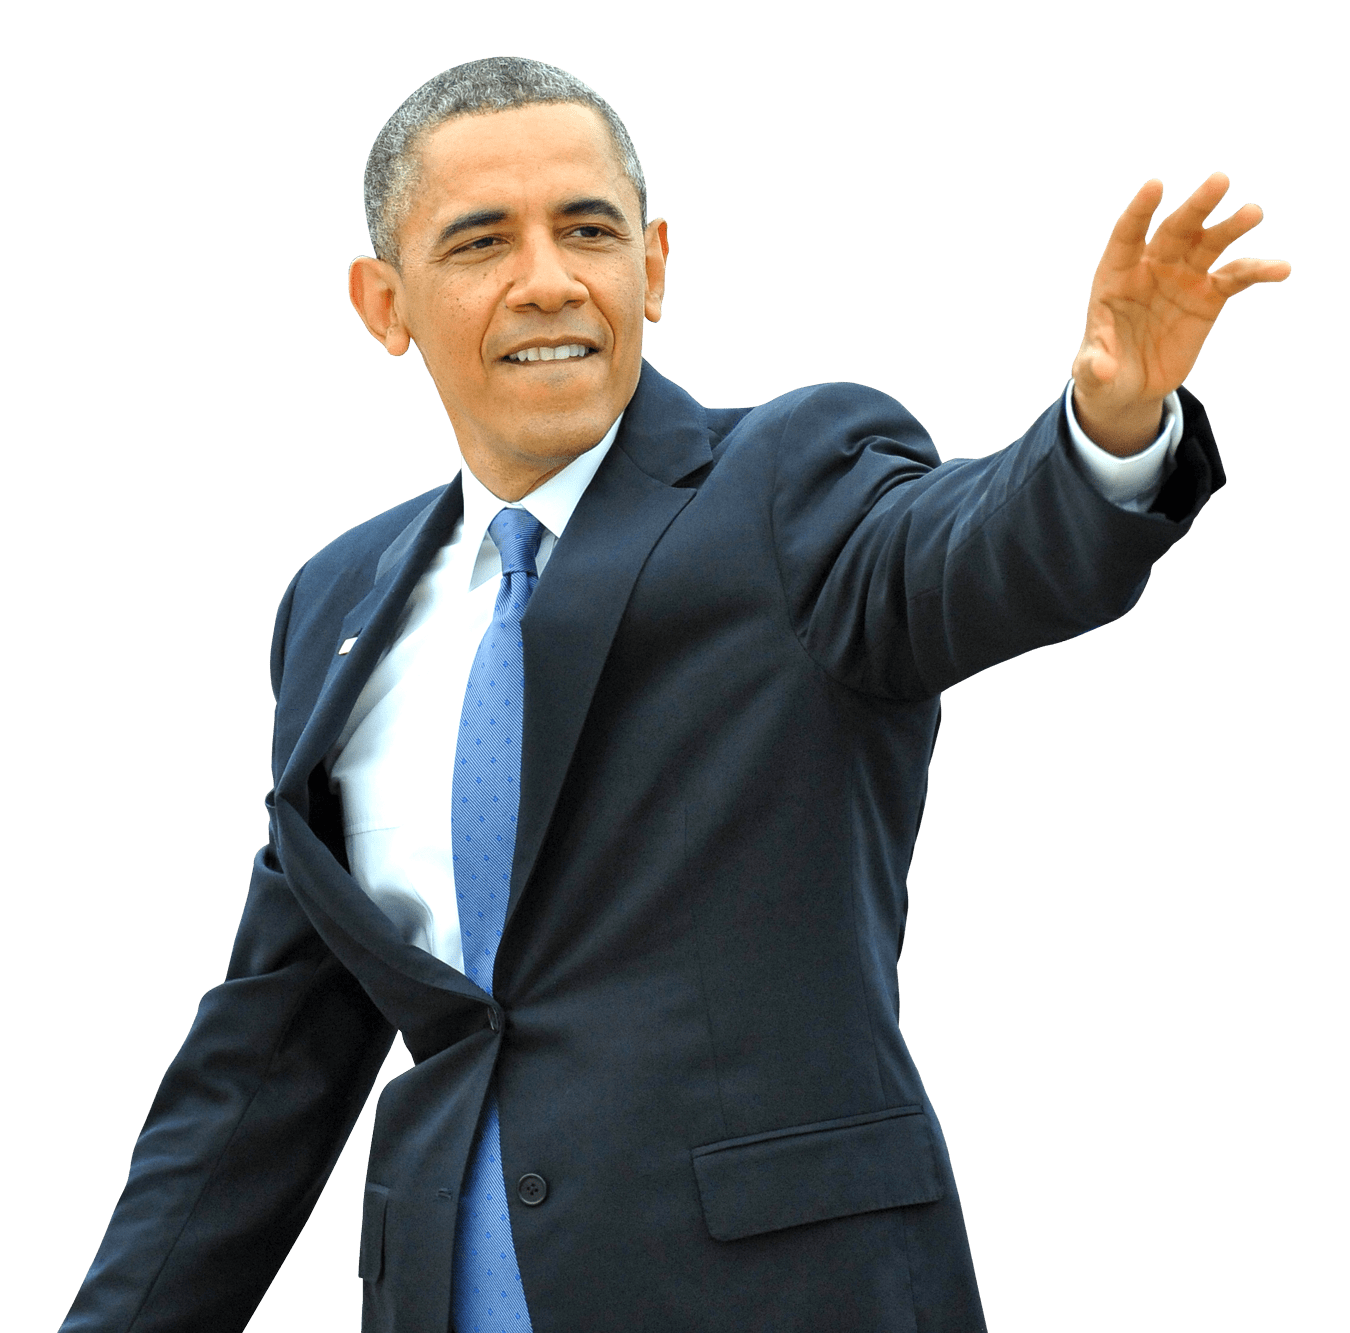 Barack Obama PNG